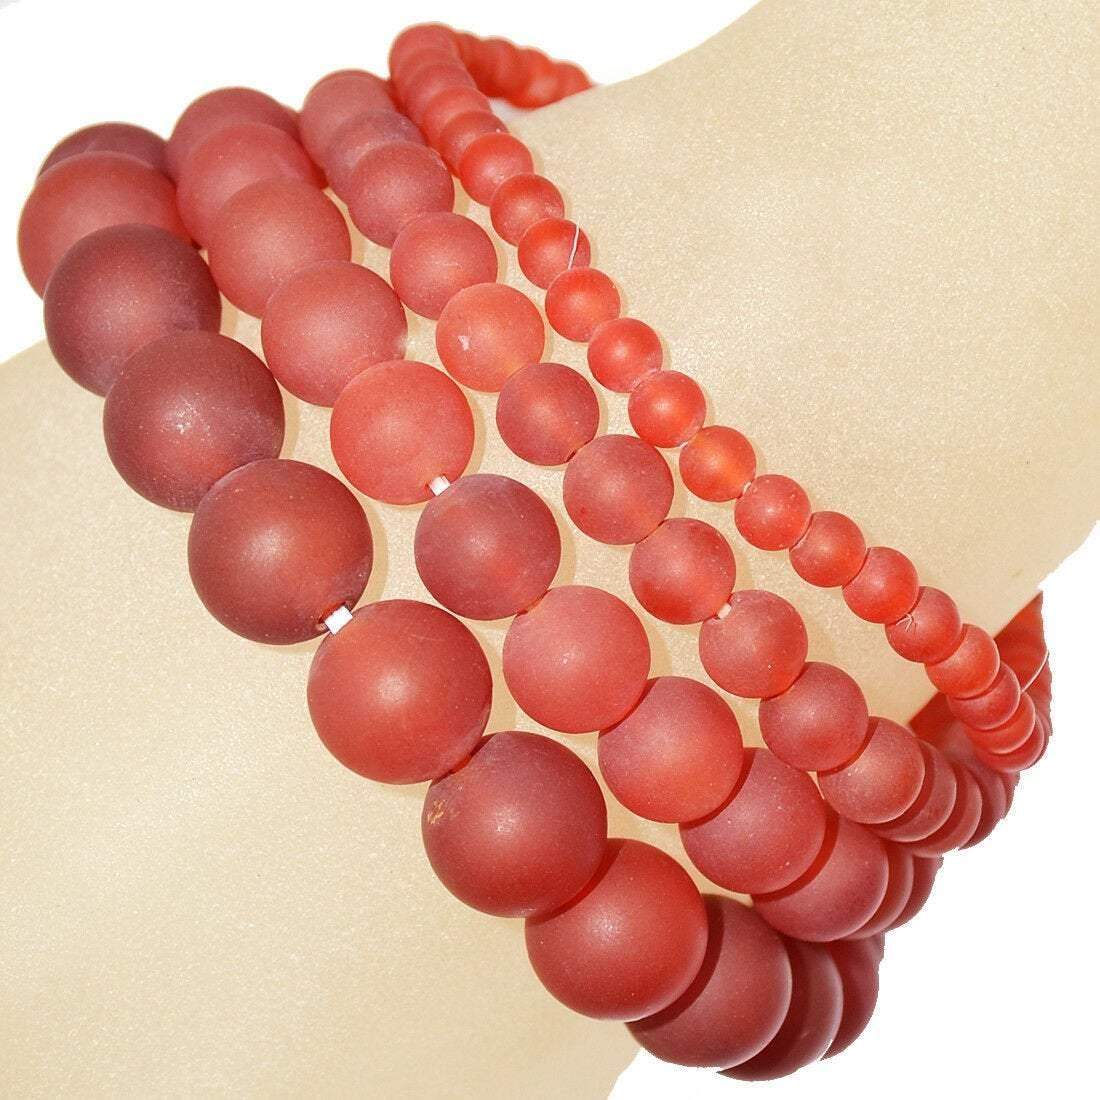 matte-red-agate-round-gemstone-bracelet.jpg